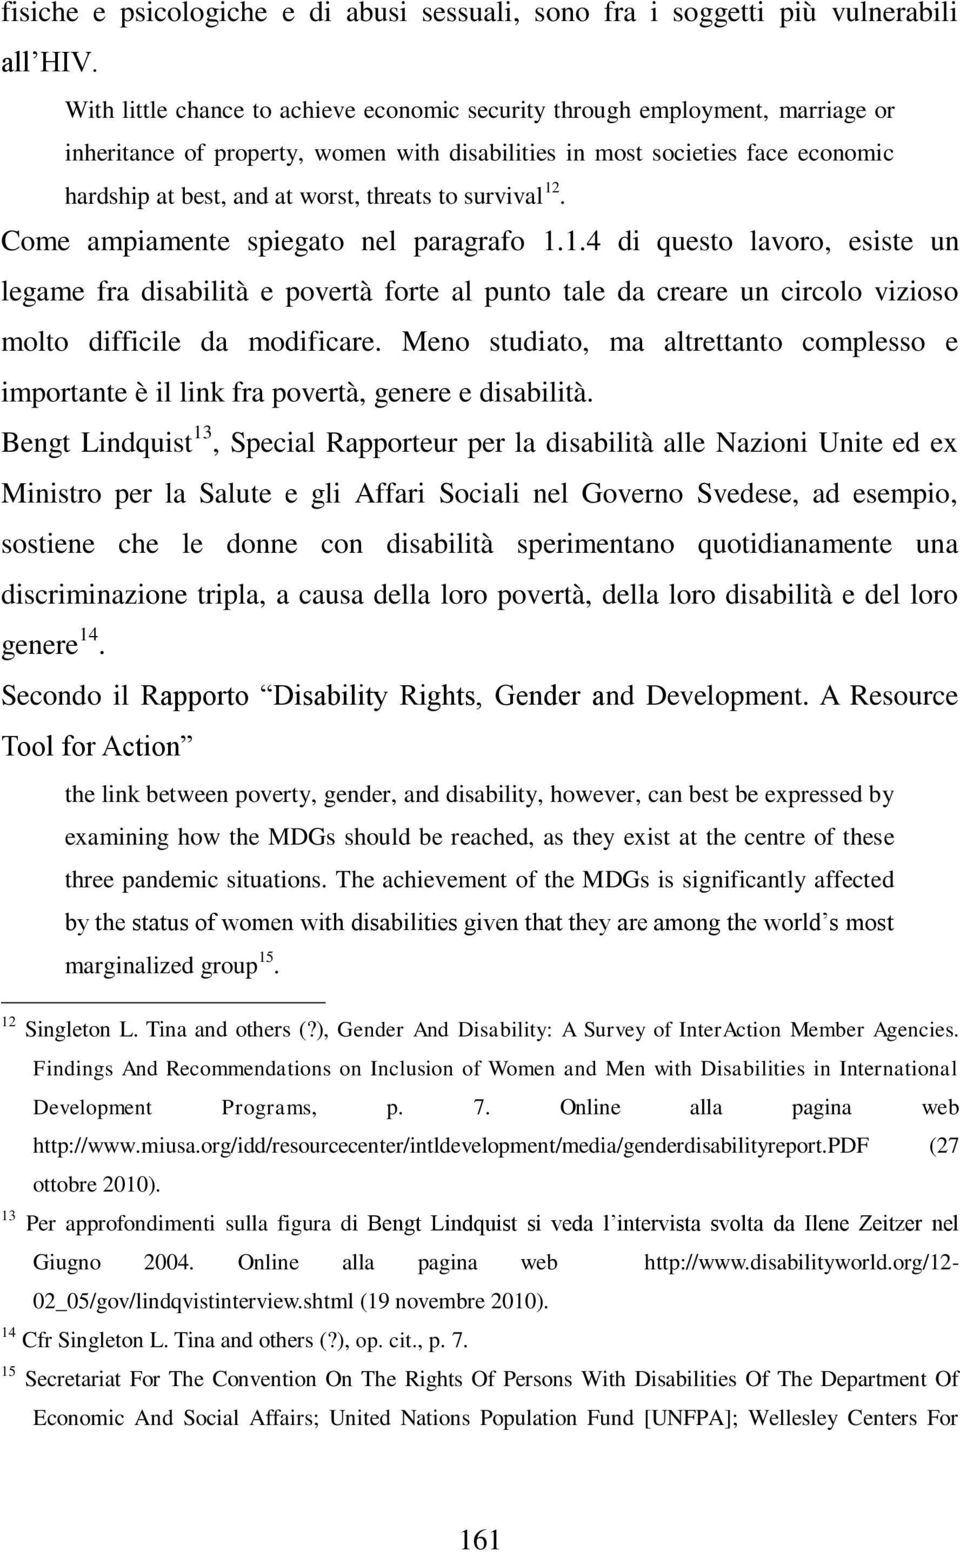 threats to survival 12. Come ampiamente spiegato nel paragrafo 1.1.4 di questo lavoro, esiste un legame fra disabilità e povertà forte al punto tale da creare un circolo vizioso molto difficile da modificare.